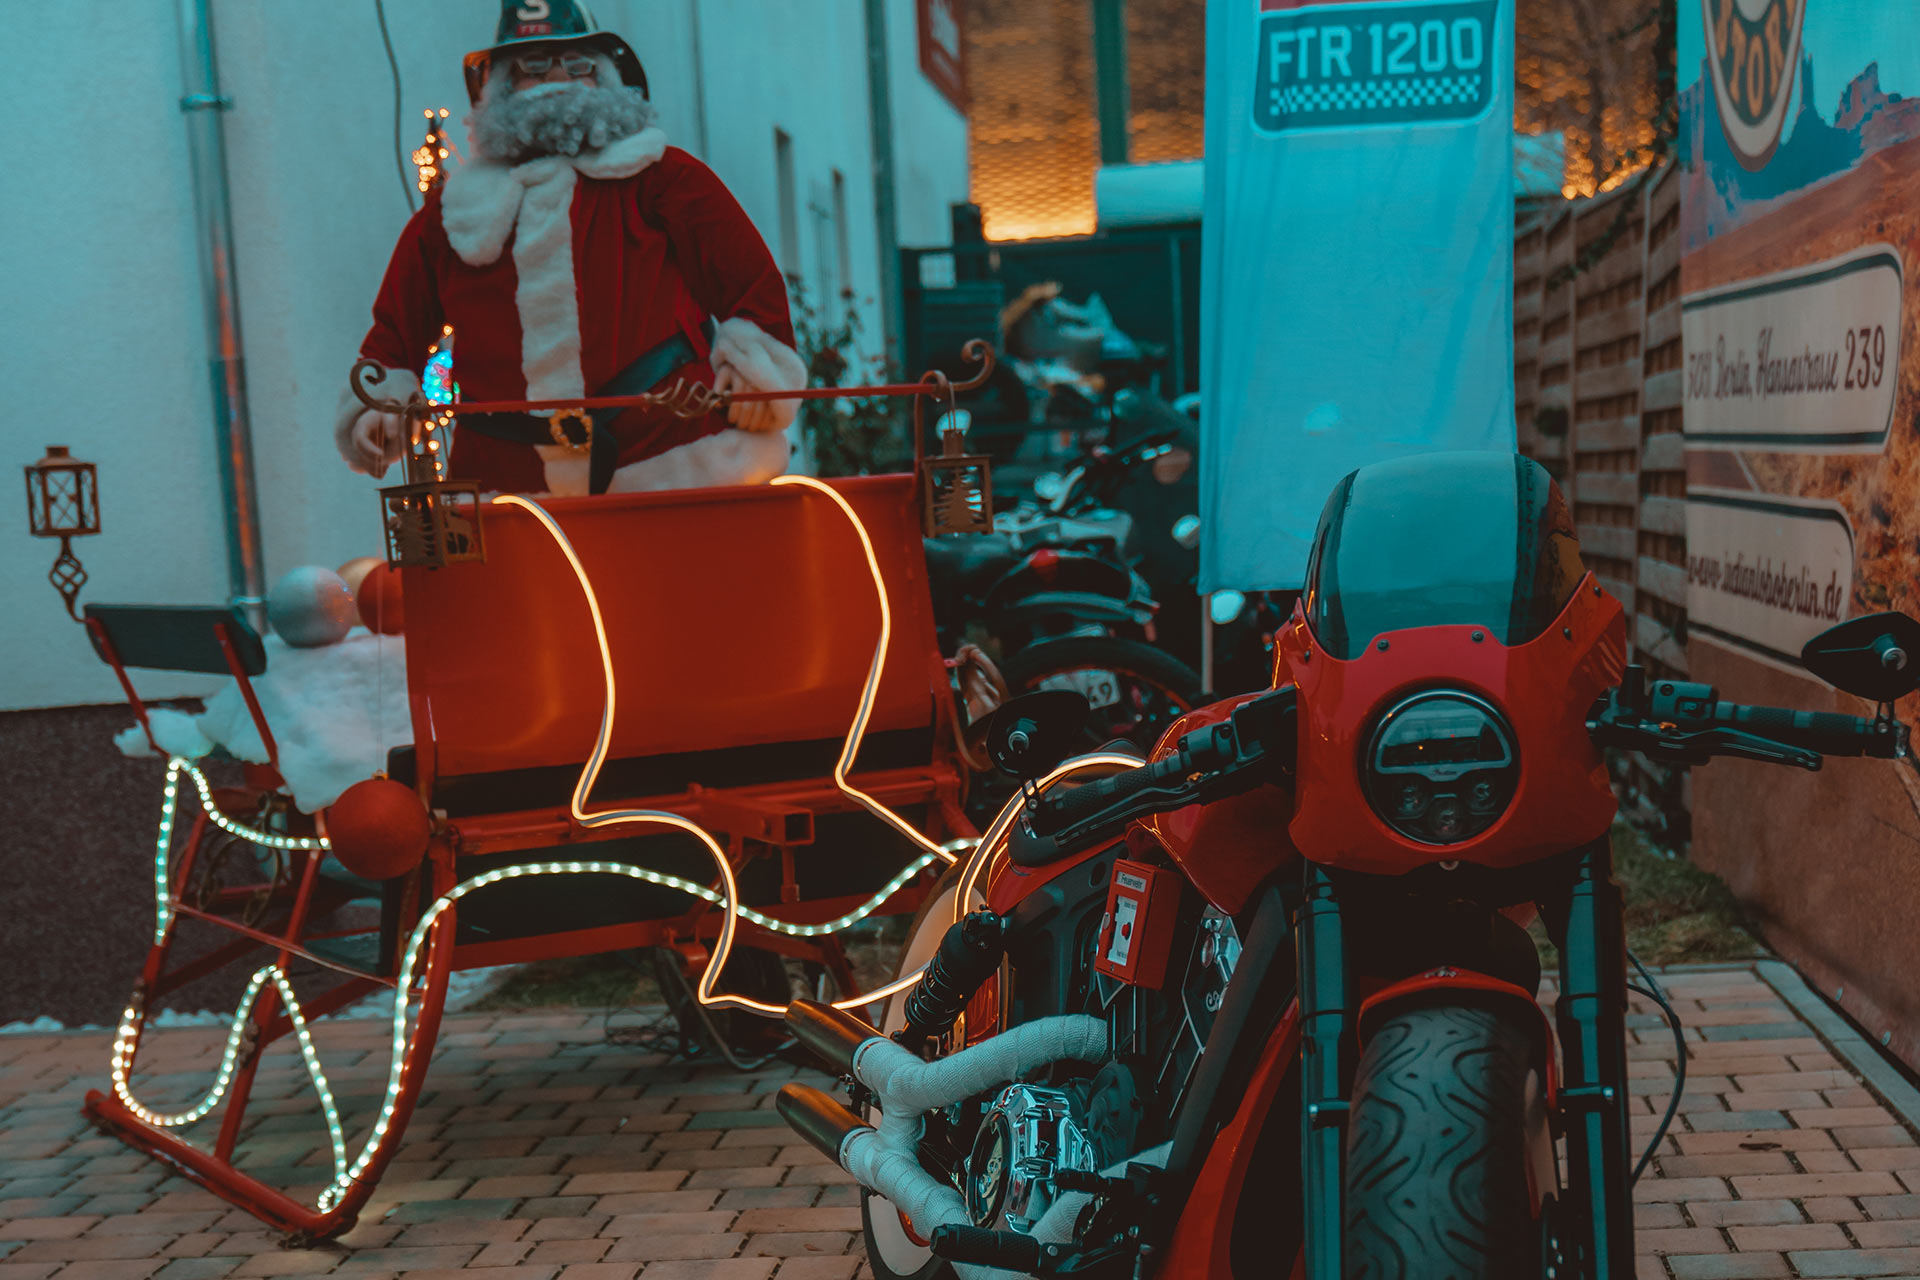 Lobo Bikes autorisierter Indian Motorcycles Dealer Berlin Brandenburg - Verkauf, Werkstatt und Fahrschule - Weihnachtsfeier